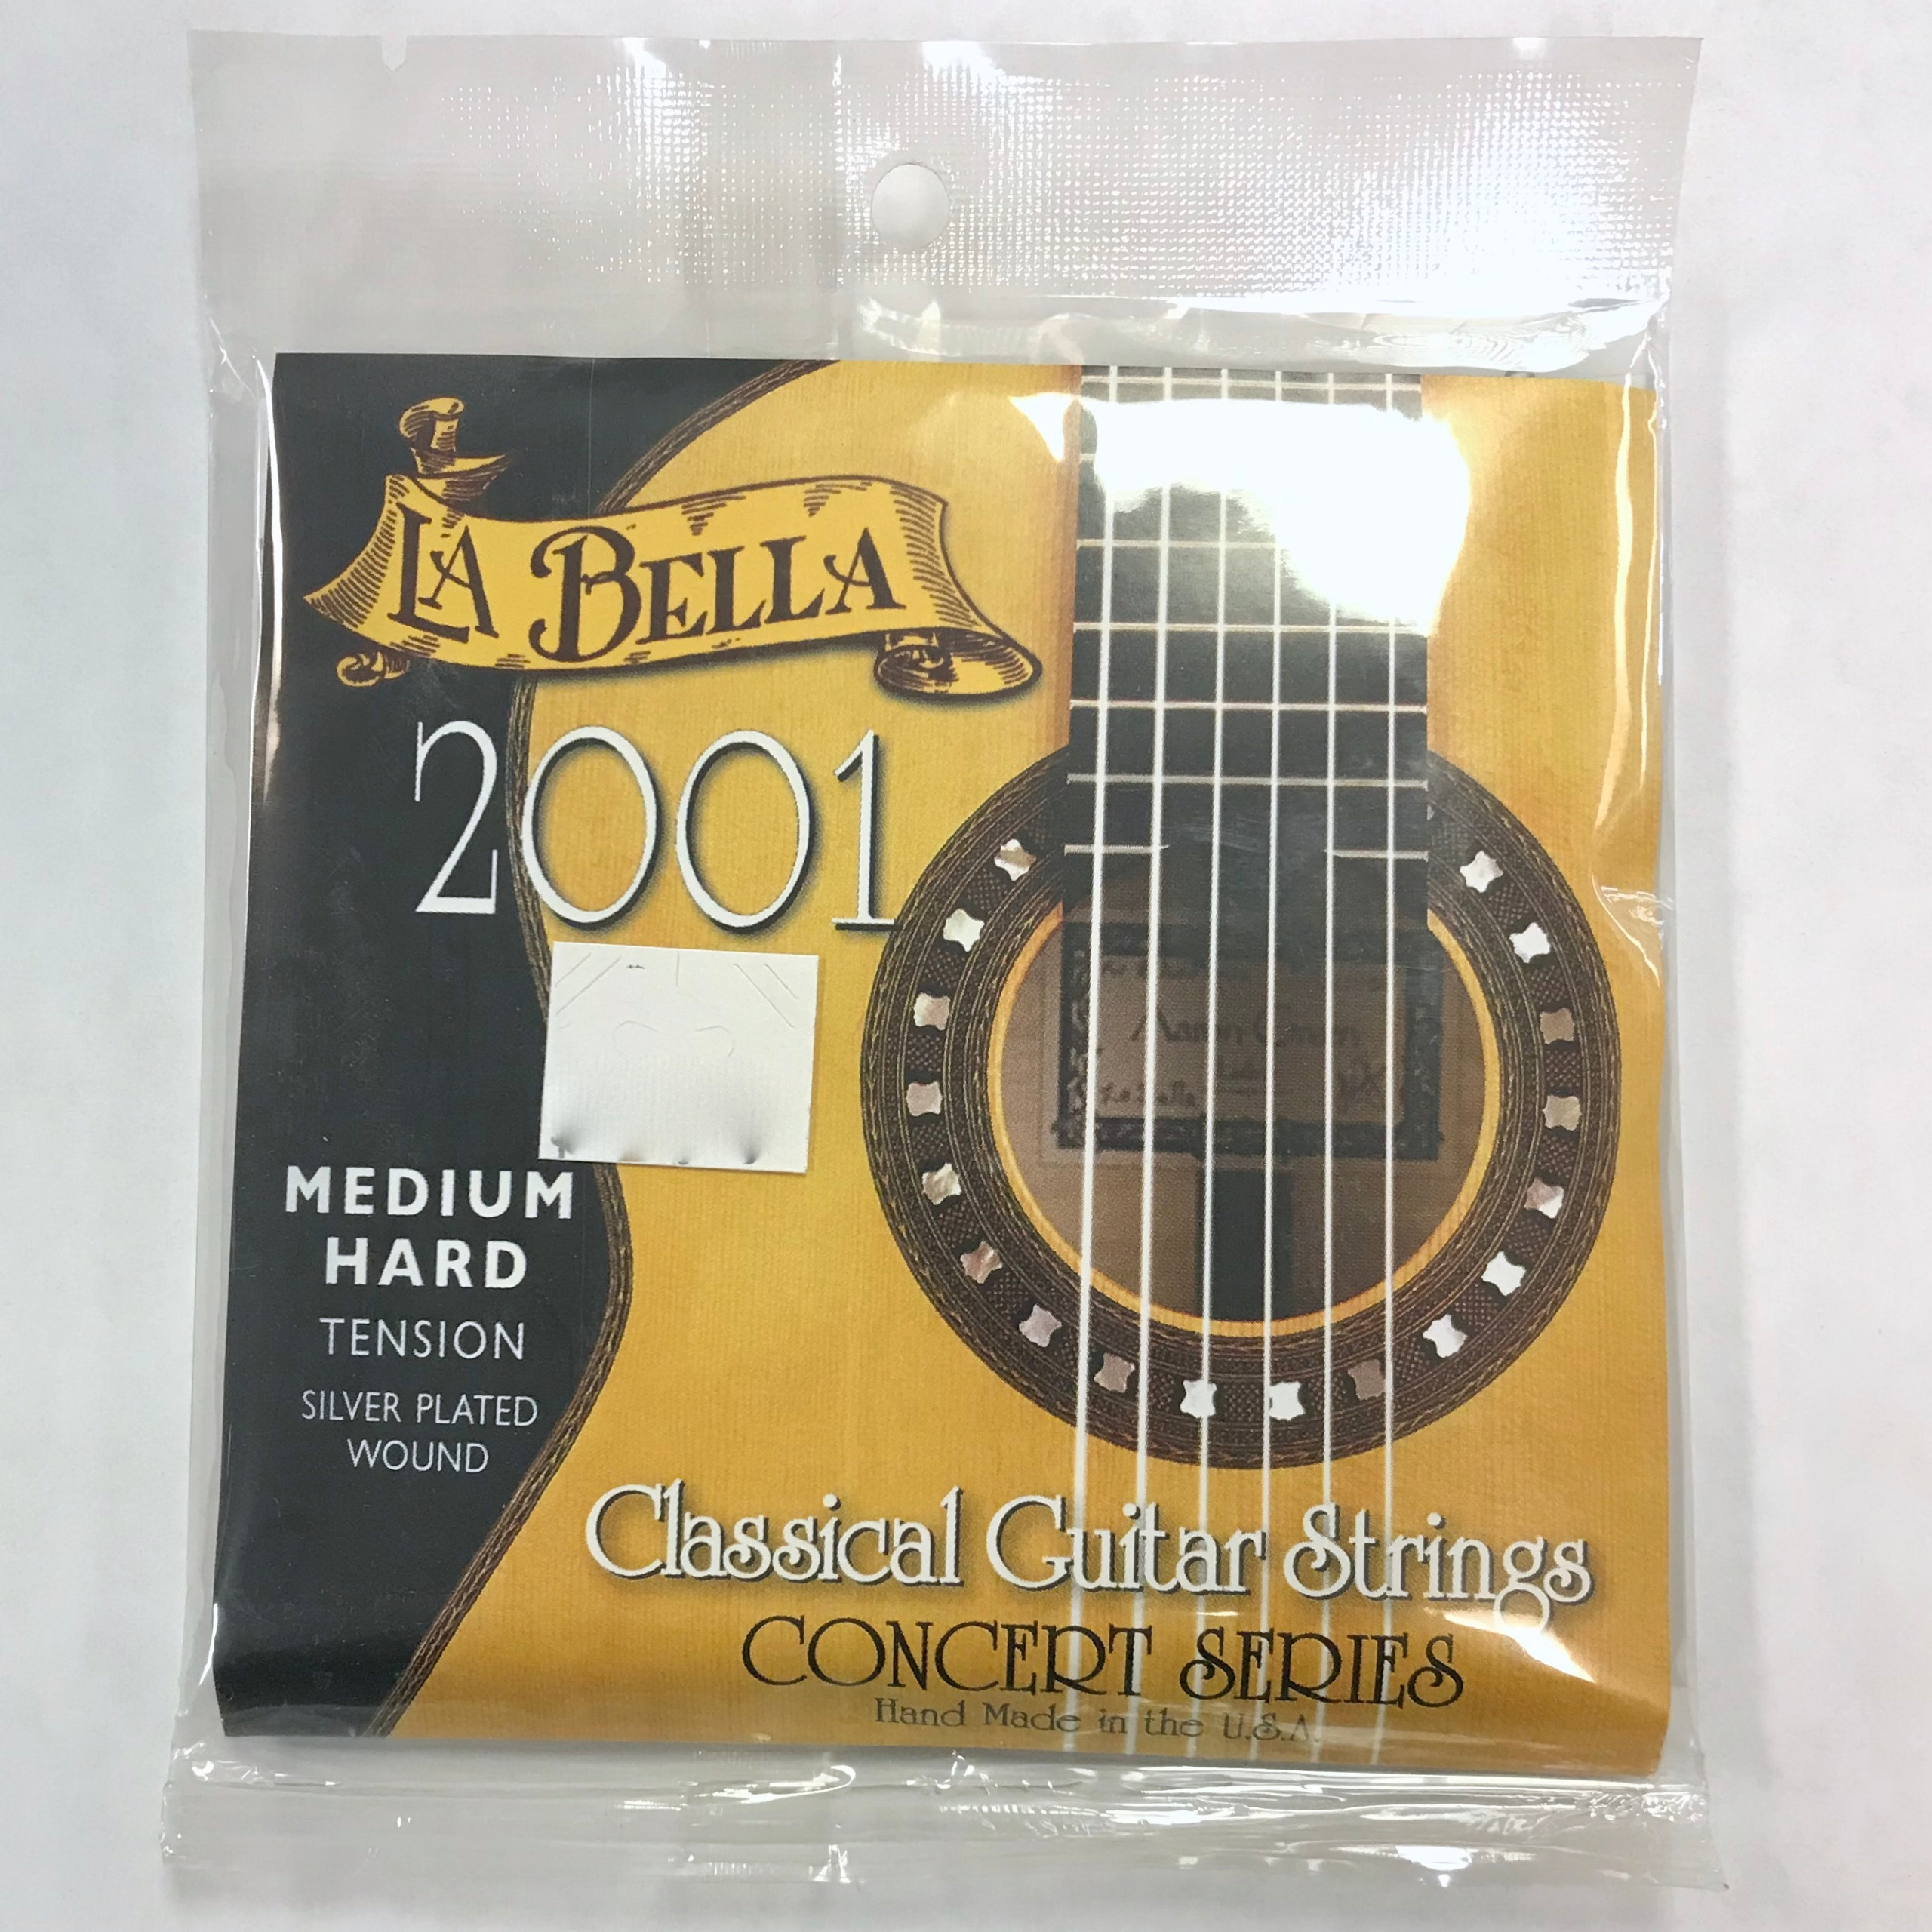 Hard Tension Classical Guitar Strings La Bella 2001 Concert Series 